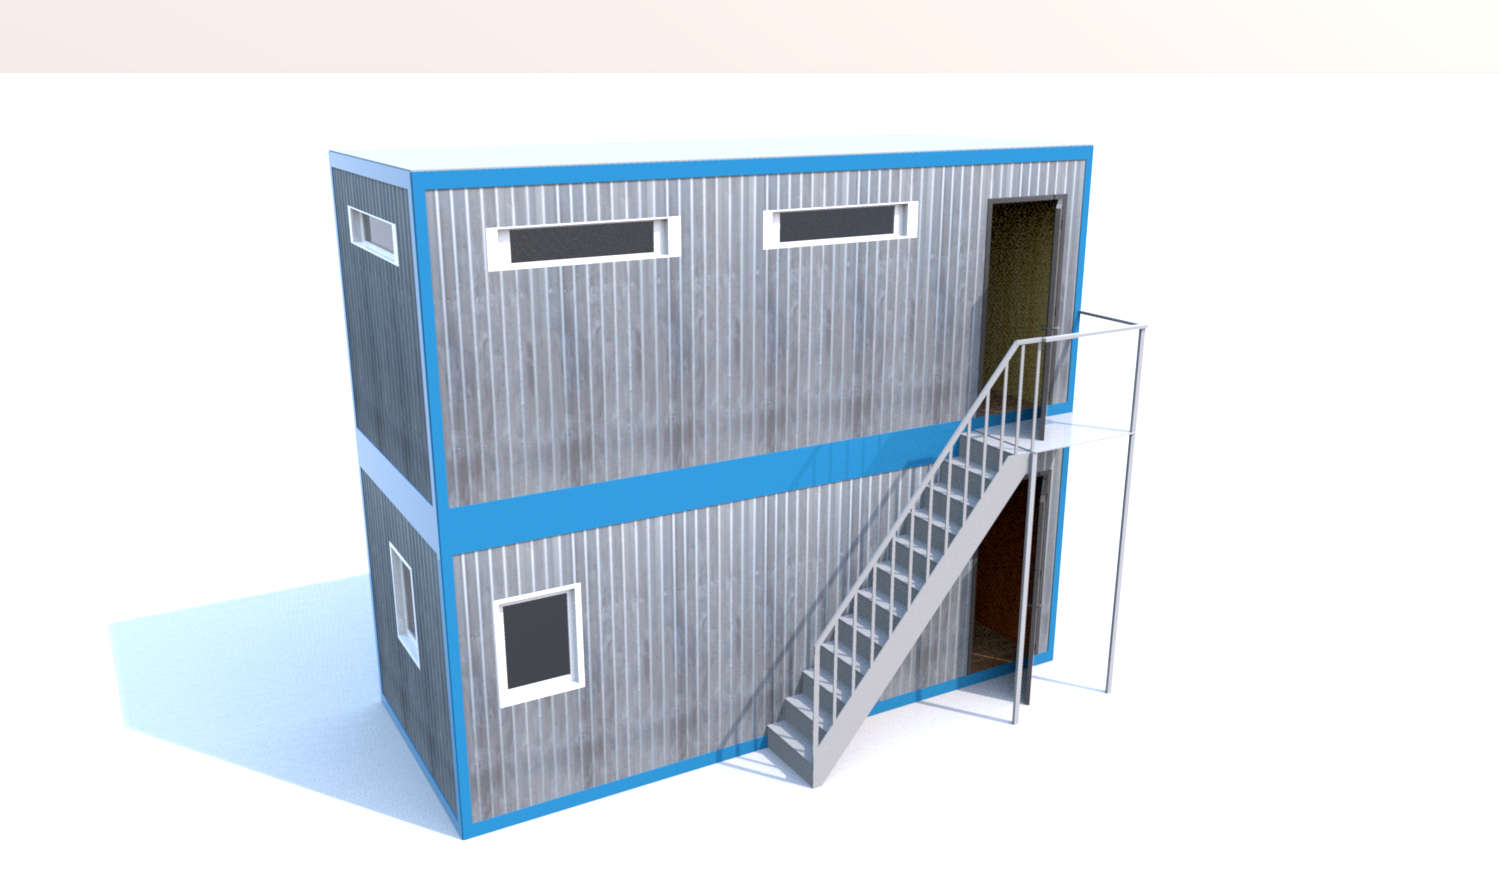 Блок-Модуль (Д.,Ш.,В.) 6,0*2,4*5,0м в 2 этажа, состоящий из 2 блок-контейнеров 6,0*2,4*2,5м